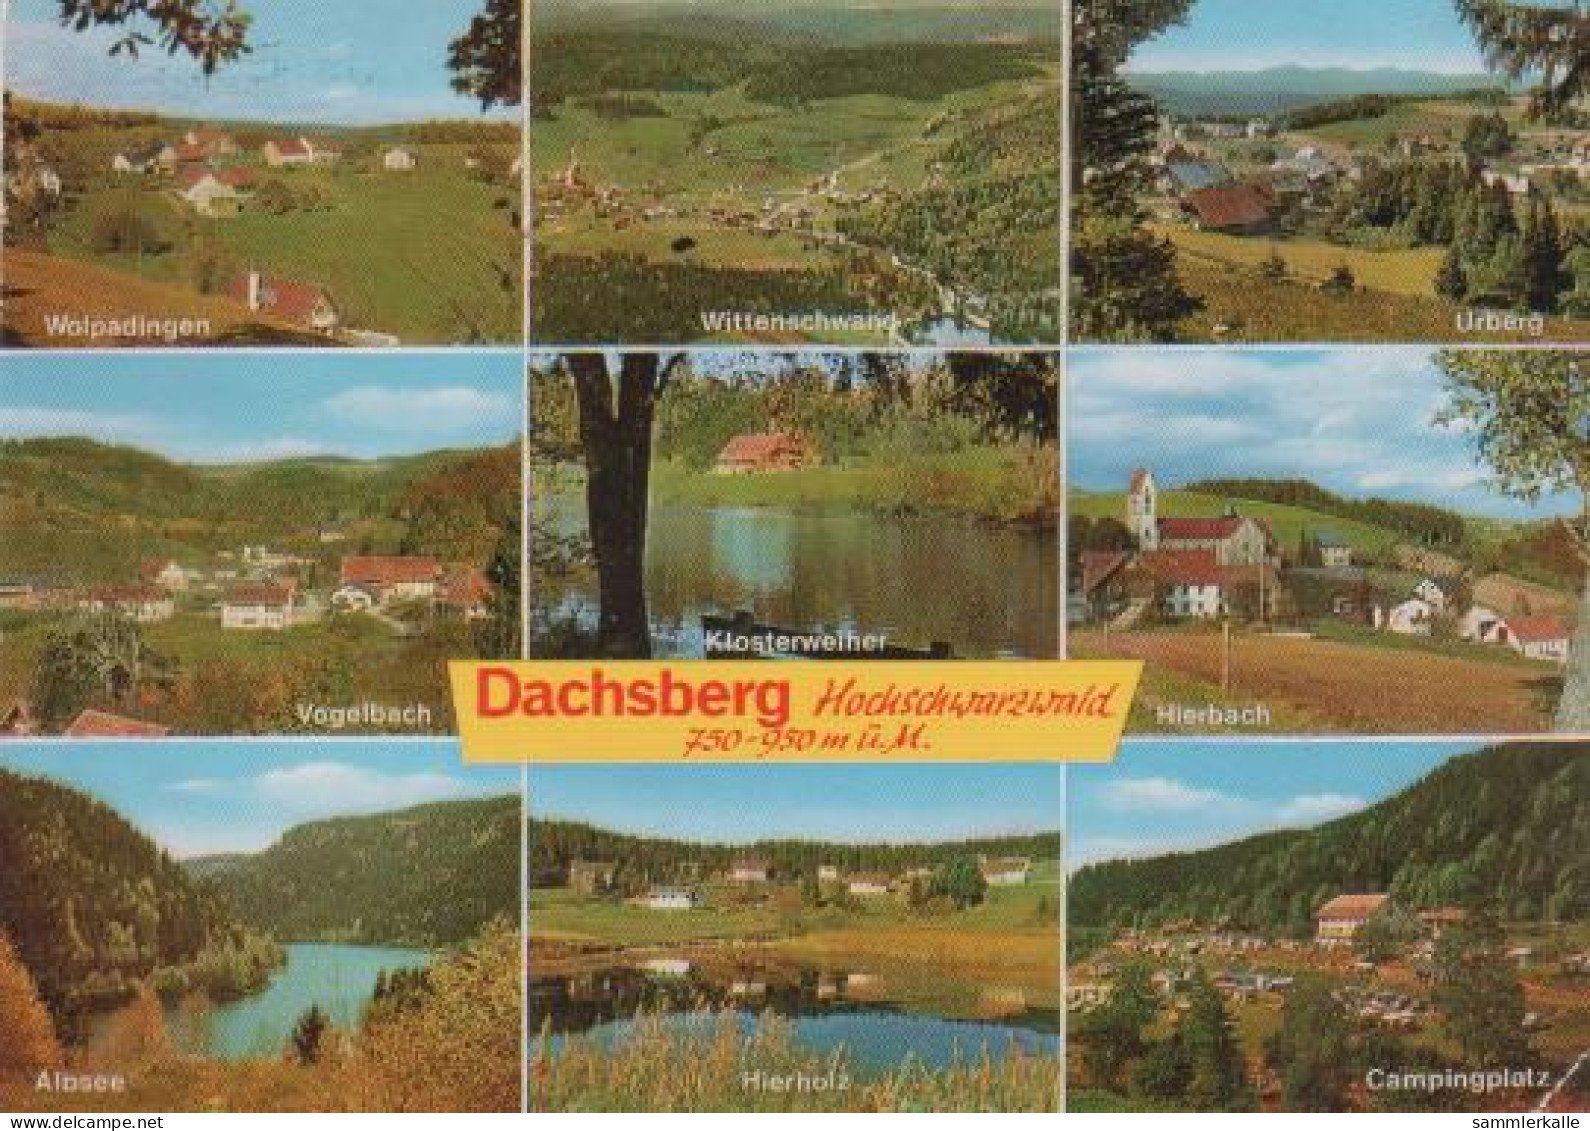 415 - Dachsberg - Wolpadingen, Vogelbach, Wittenschwand, Klosterweiher, Hierholz, Hierbach, Campingplatz - Waldshut-Tiengen